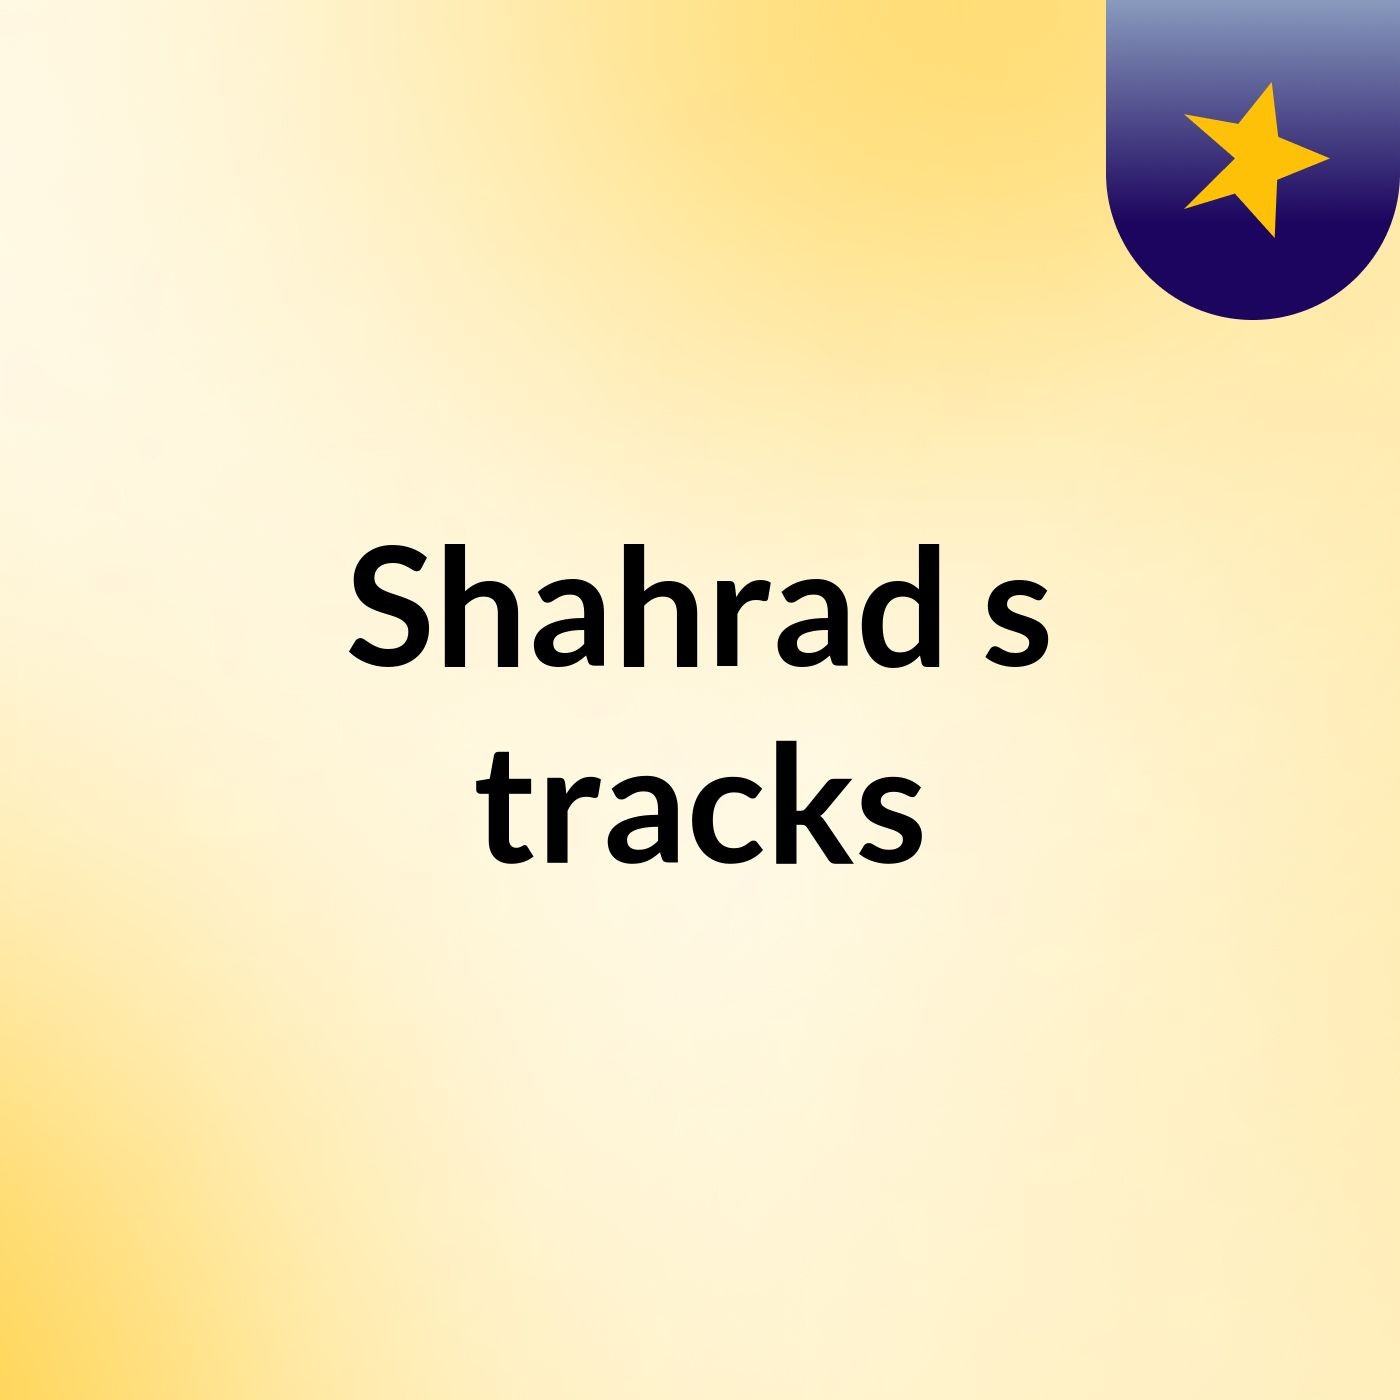 Shahrad's tracks